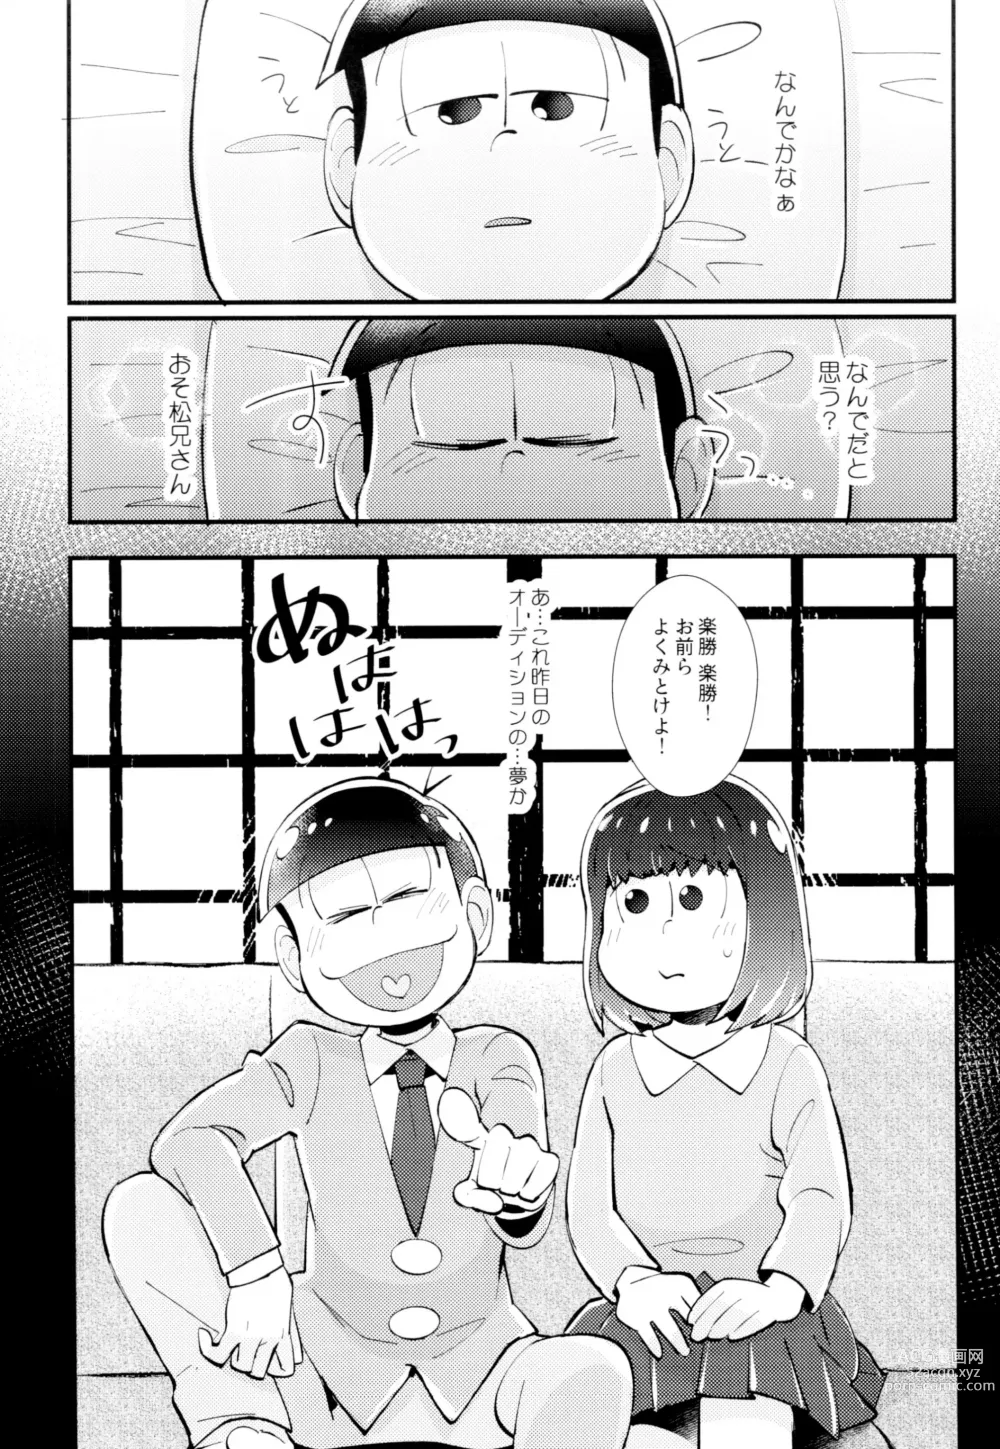 Page 10 of doujinshi Hajimari wa, Yomichi no Kaori.